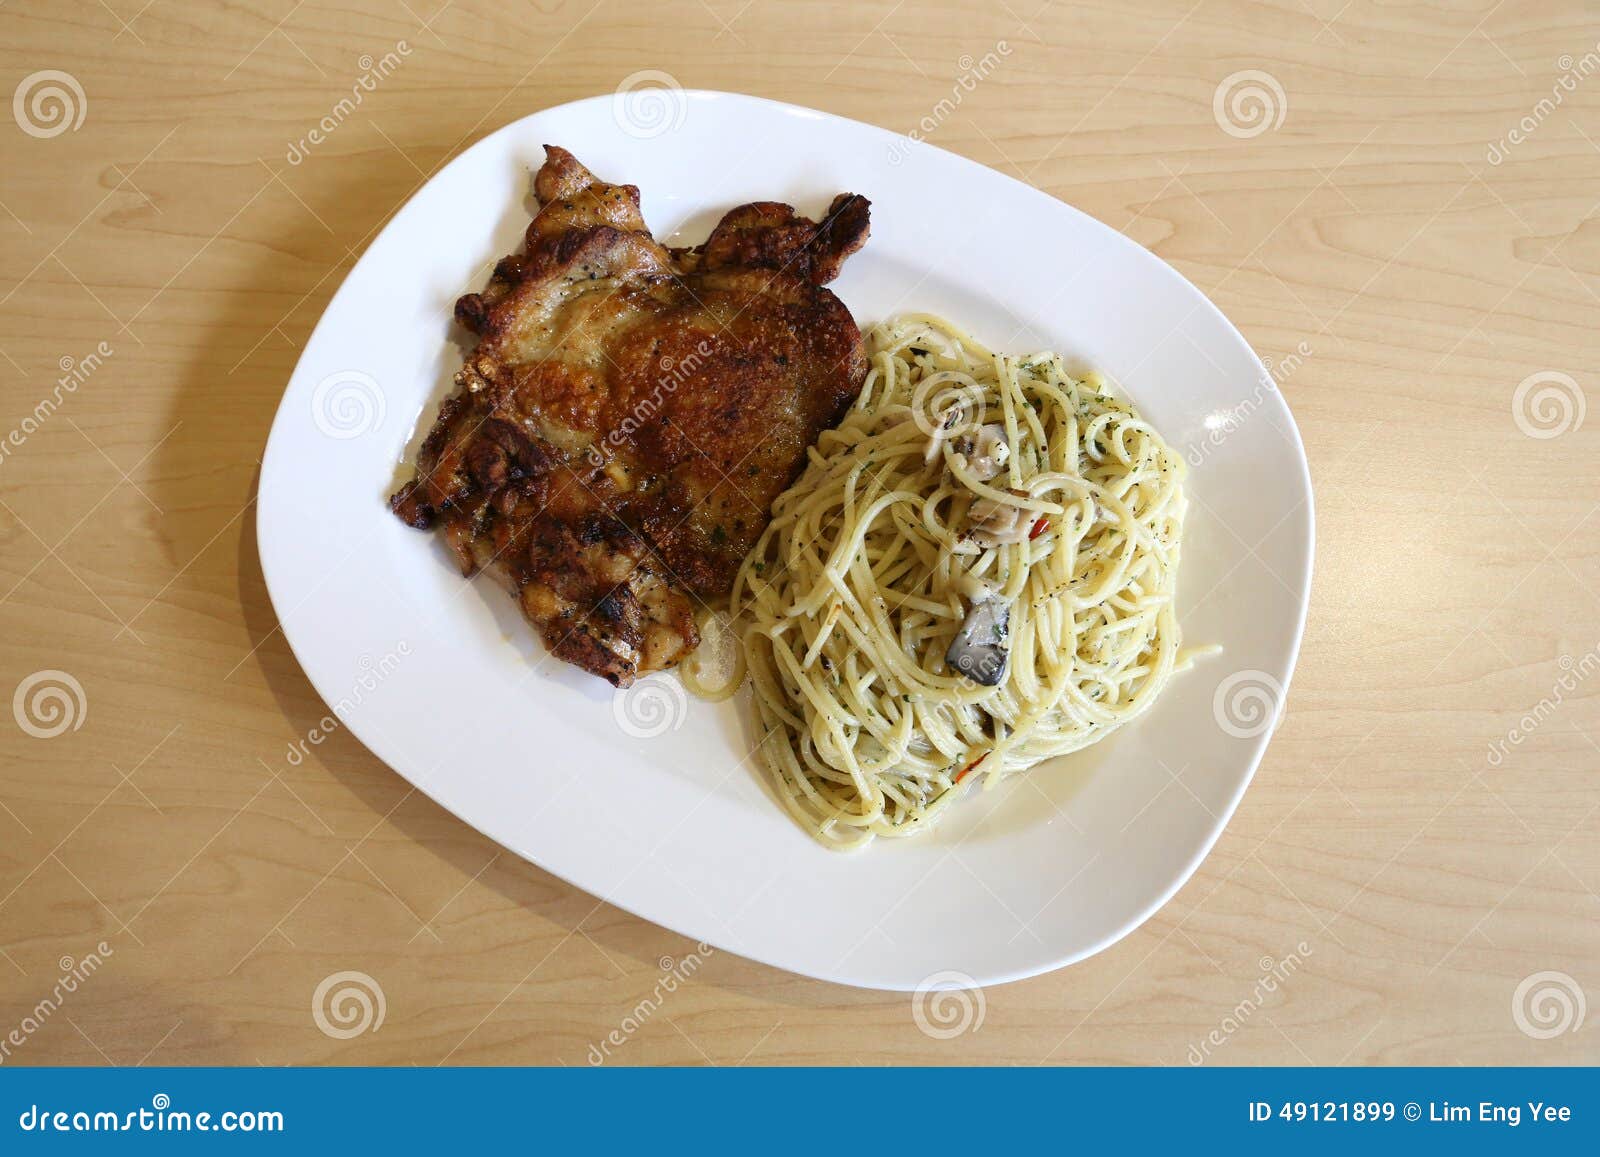 spaghetti aglio olio with bbq chicken